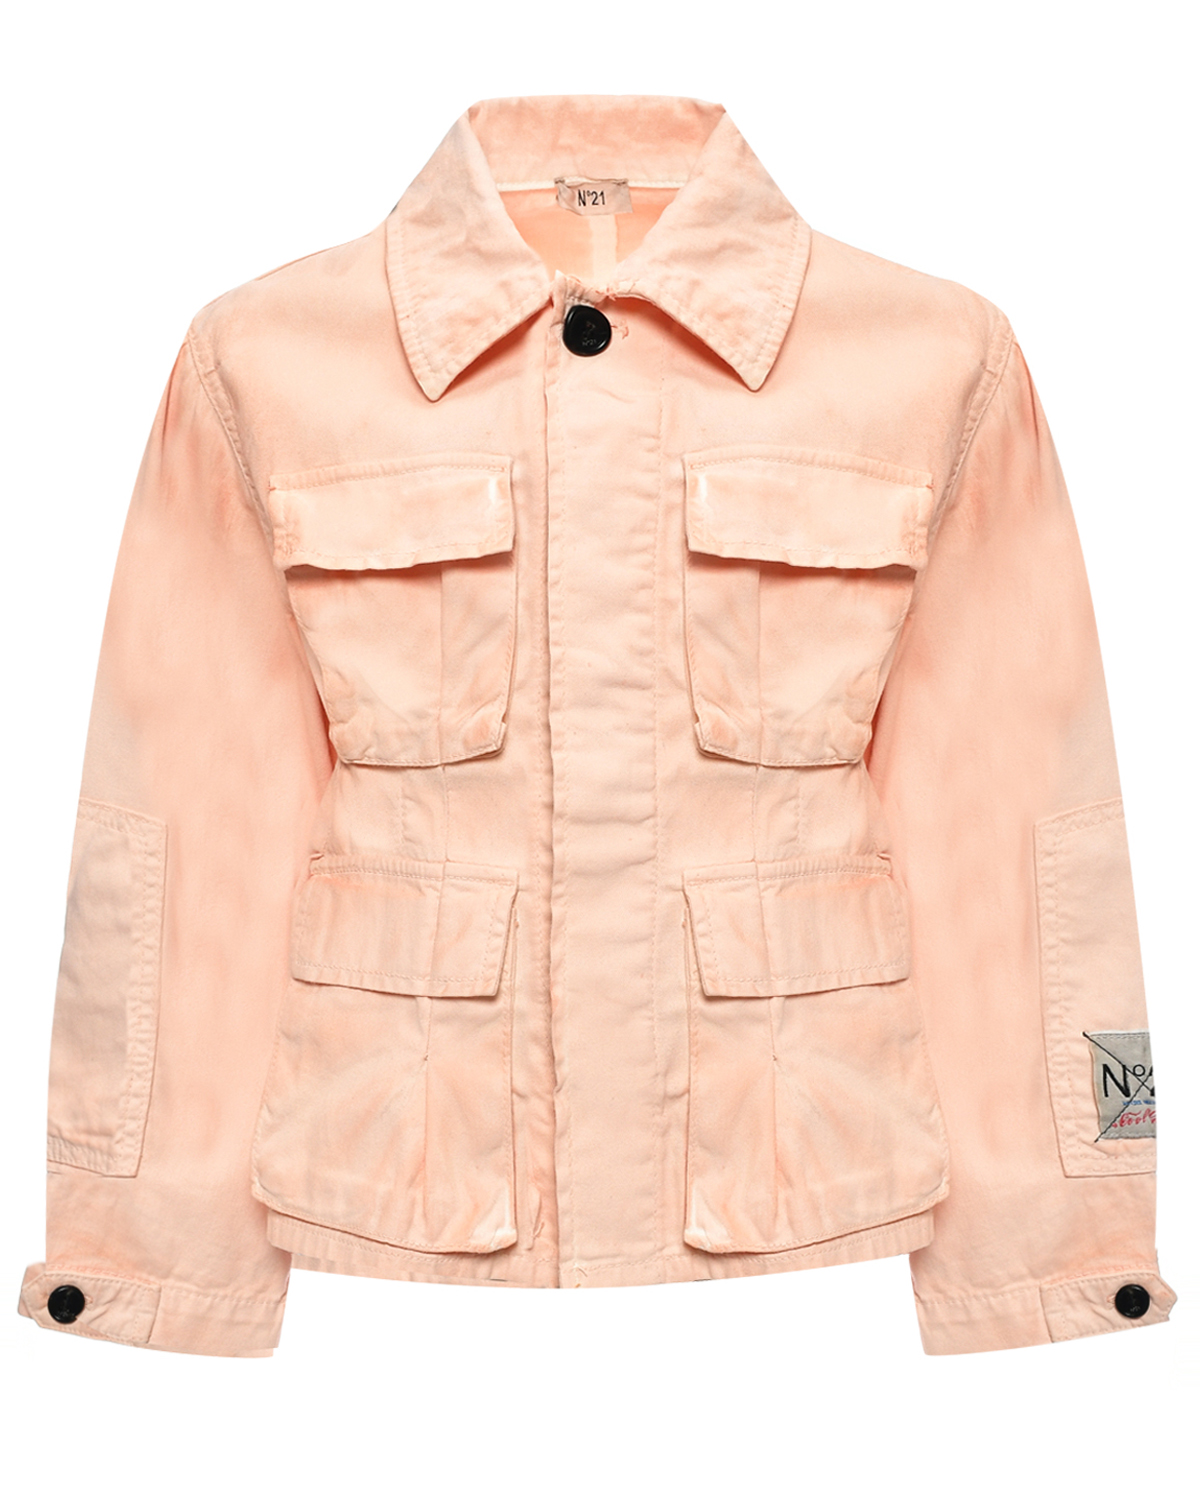 Джинсовая куртка с накладными карманами, розовая No. 21, размер 140, цвет нет цвета